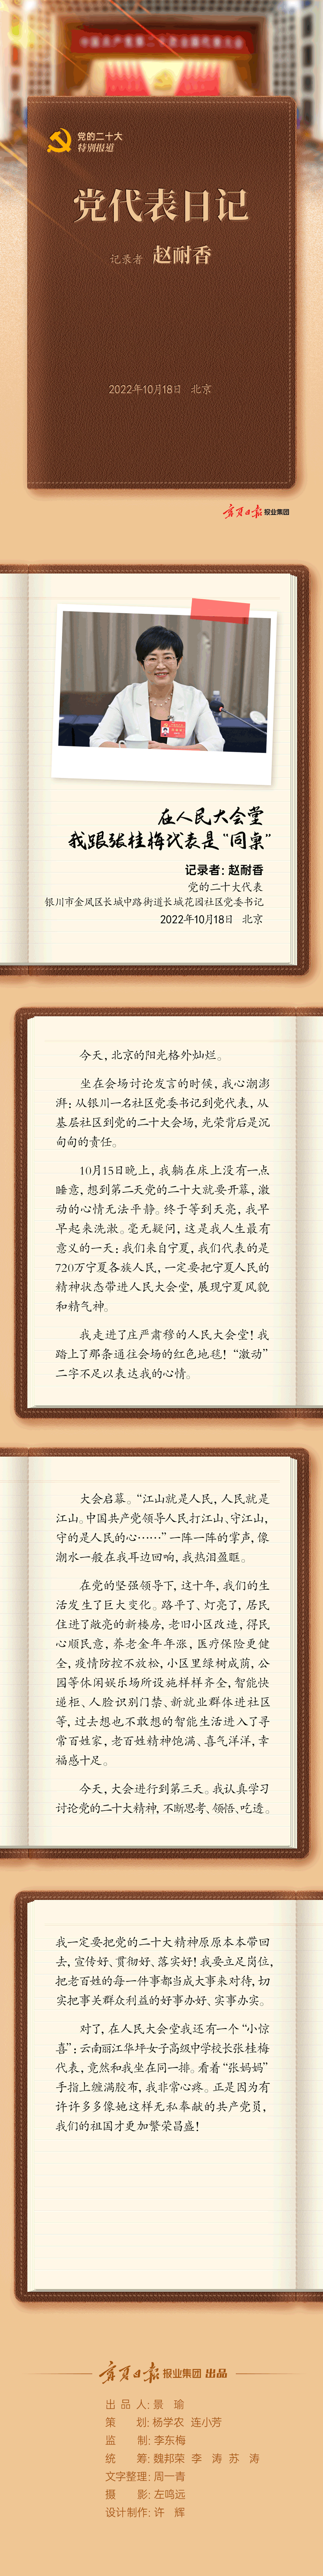 党代表日记-赵耐香-静态长图.png